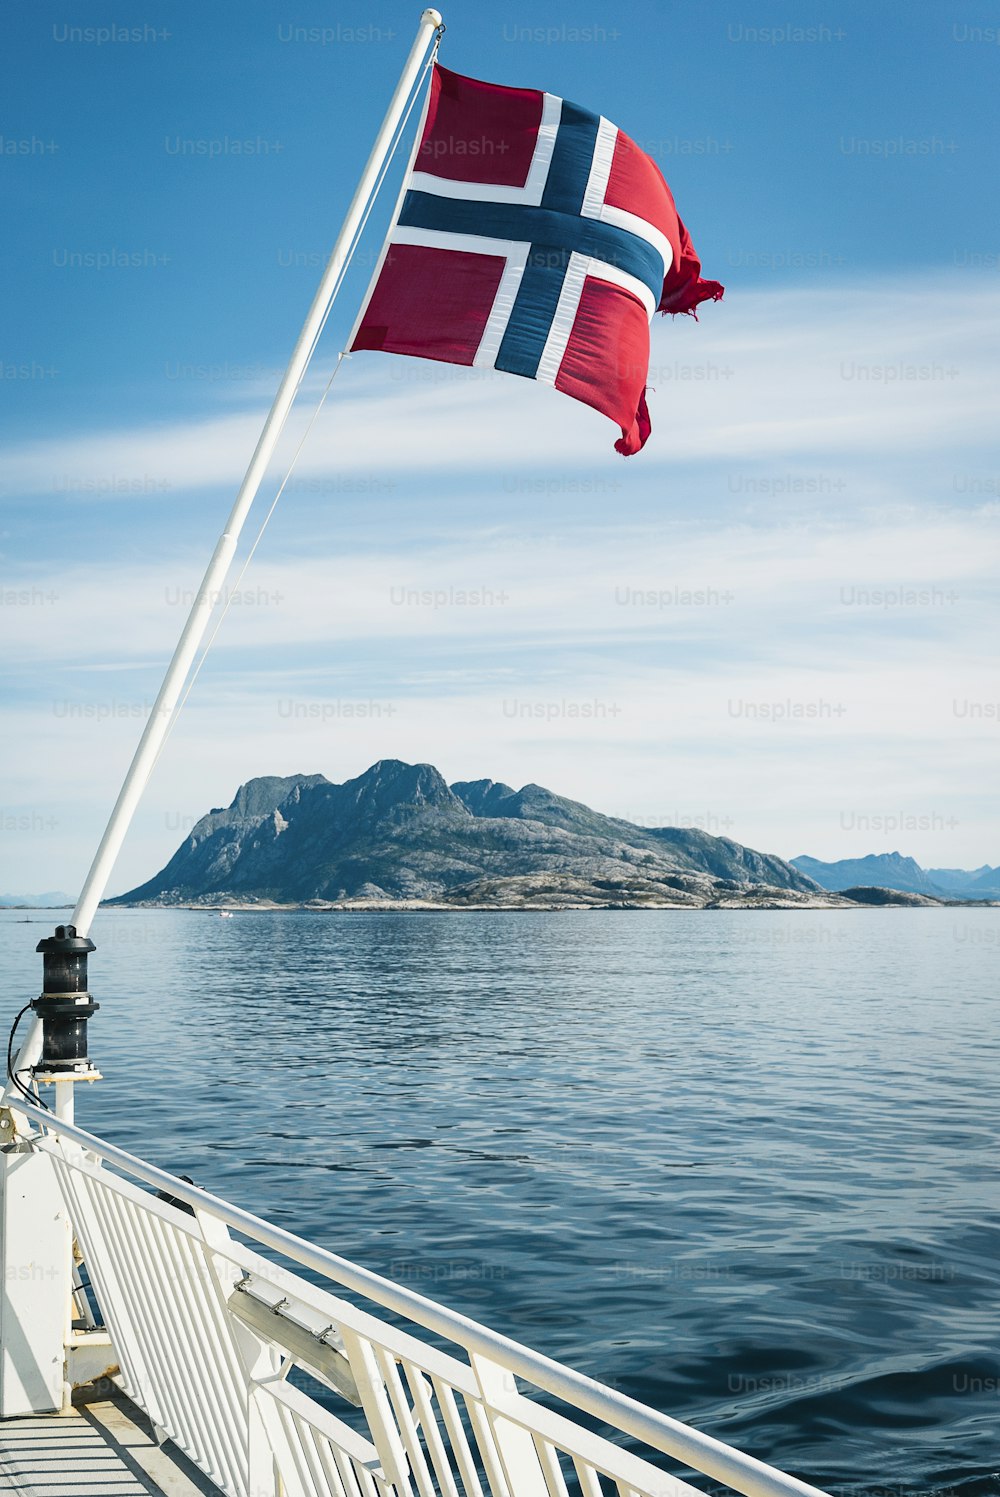 Un drapeau sur un bateau dans l’eau